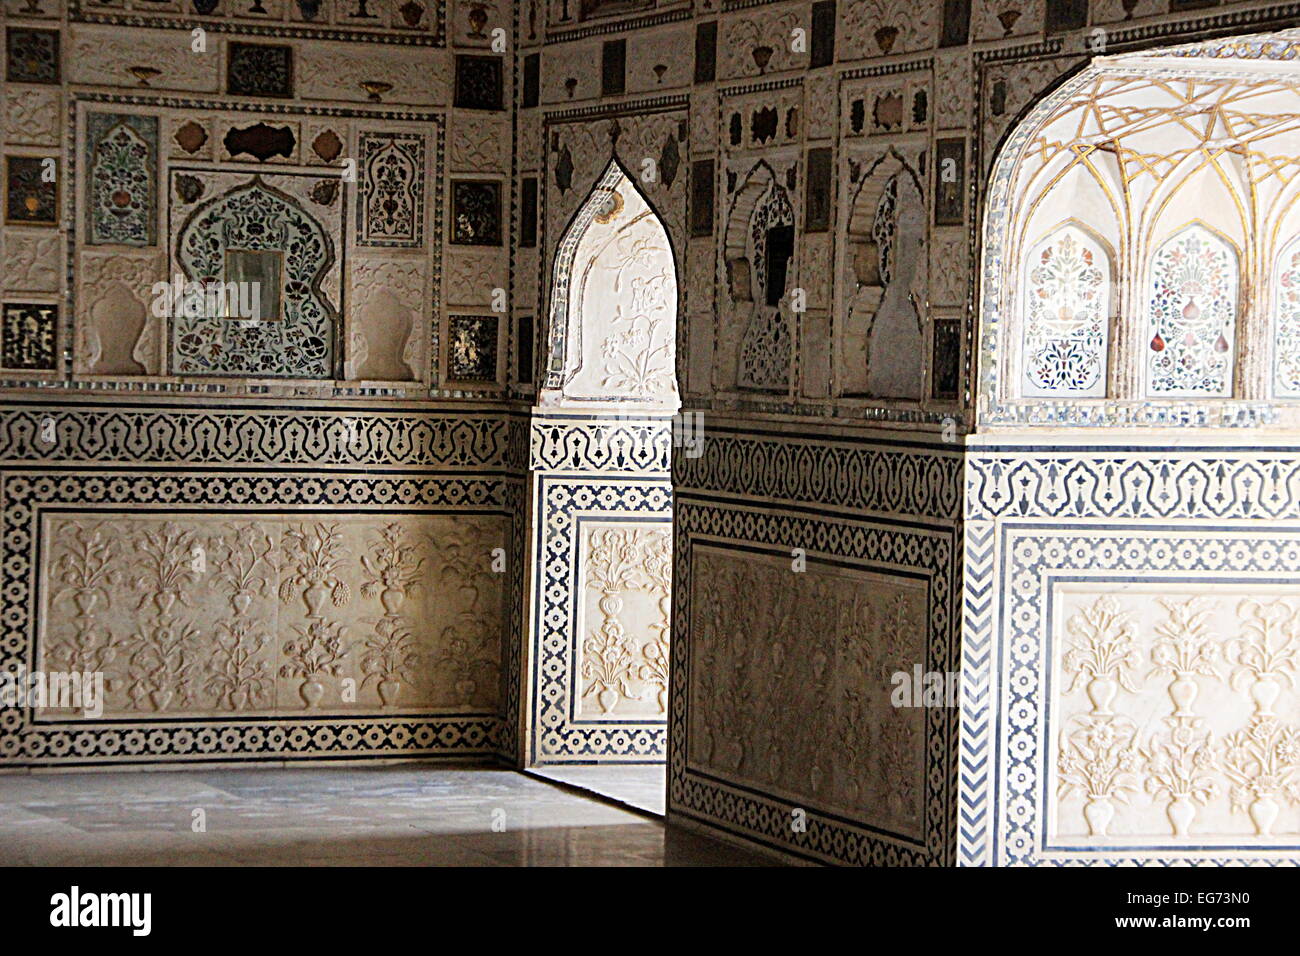 Decorative design on verandah wall of Hall of Mirrors (Sheesh Mahal) at Amer Palace, Amber Fort, Jaipur, Rajasthan, India, Asia Stock Photo